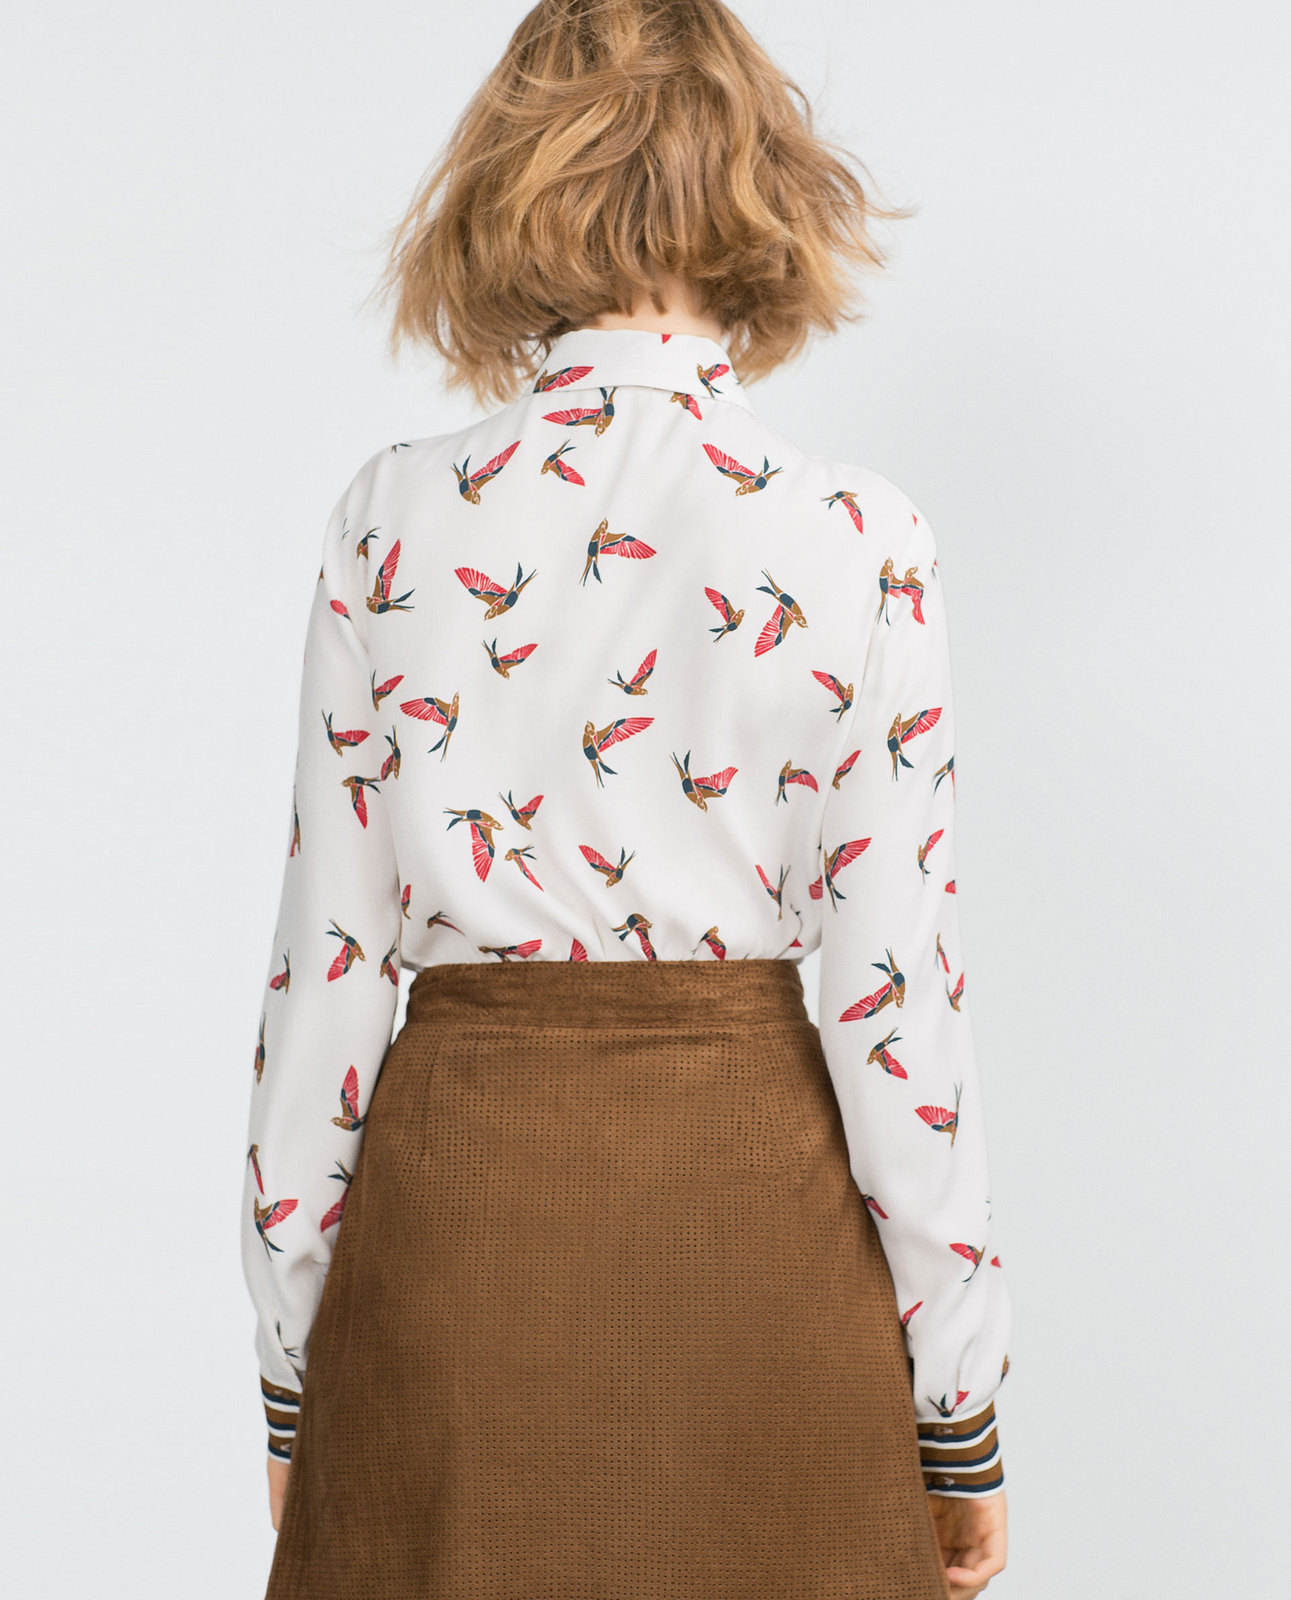 Zara madármintás női ing 2015.10.15 fotója